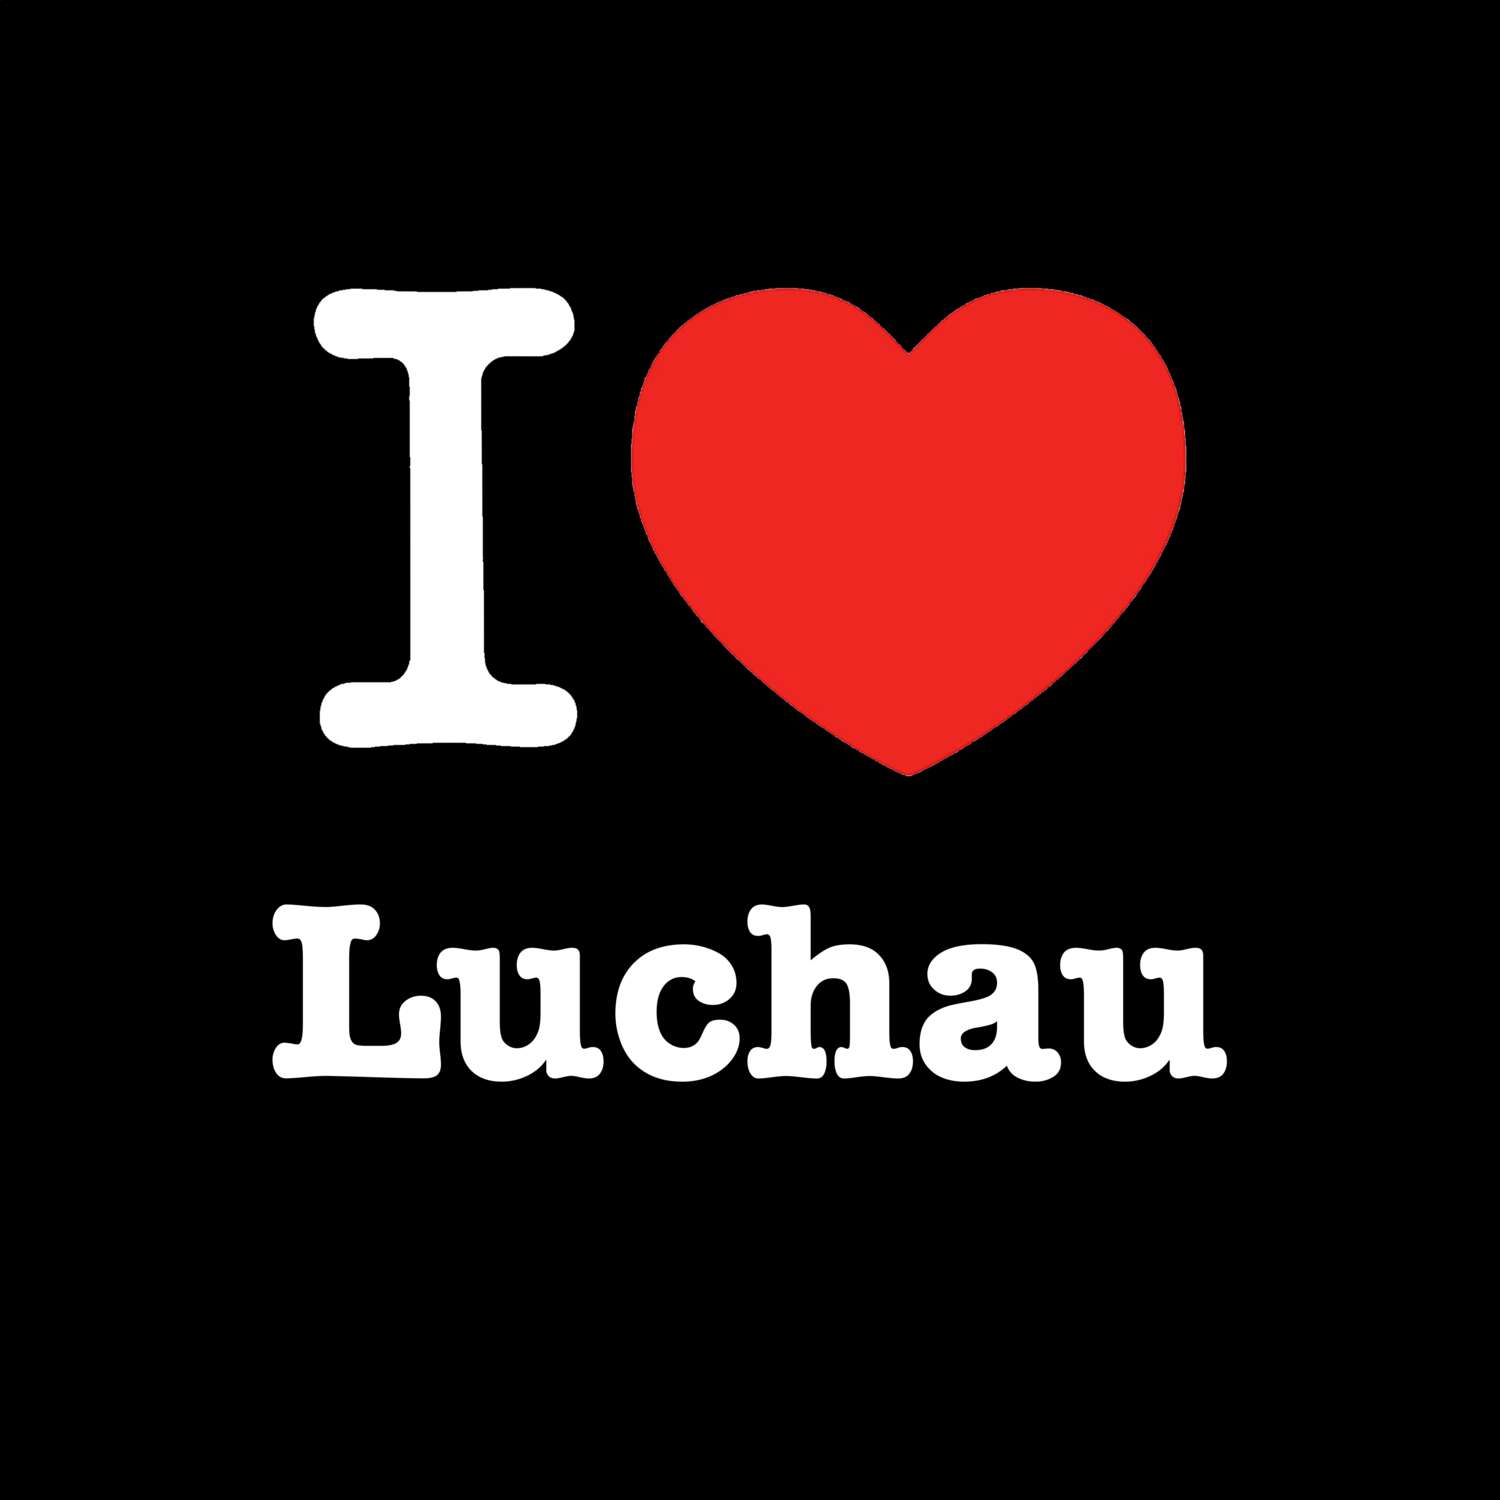 Luchau T-Shirt »I love«